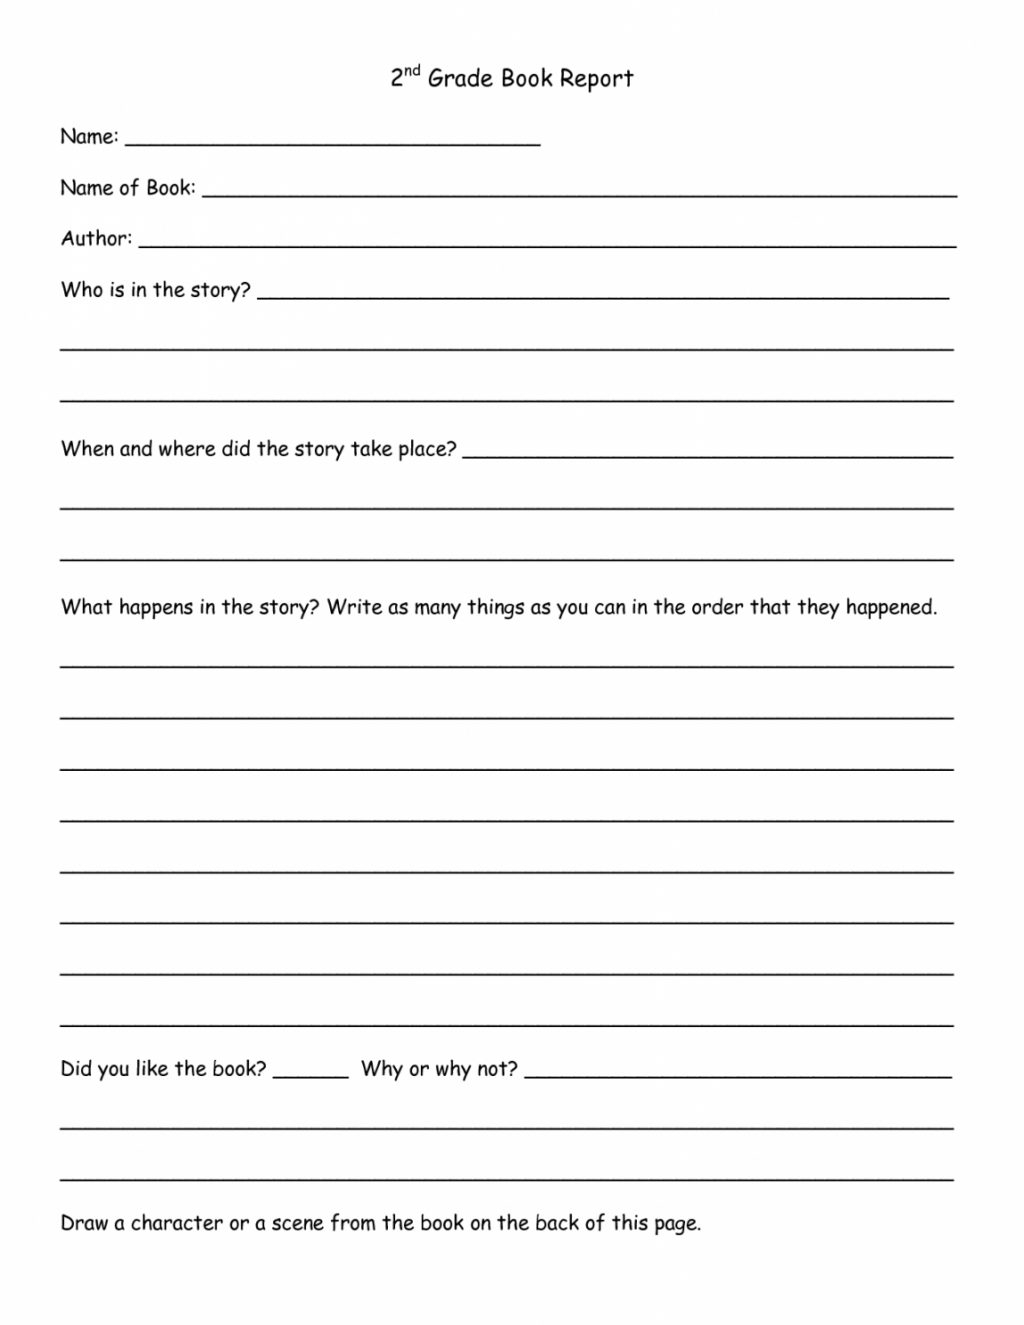 Worksheet Ideas ~ Book Report Template 1St Grade Kola With Regard To Book Report Template Grade 1